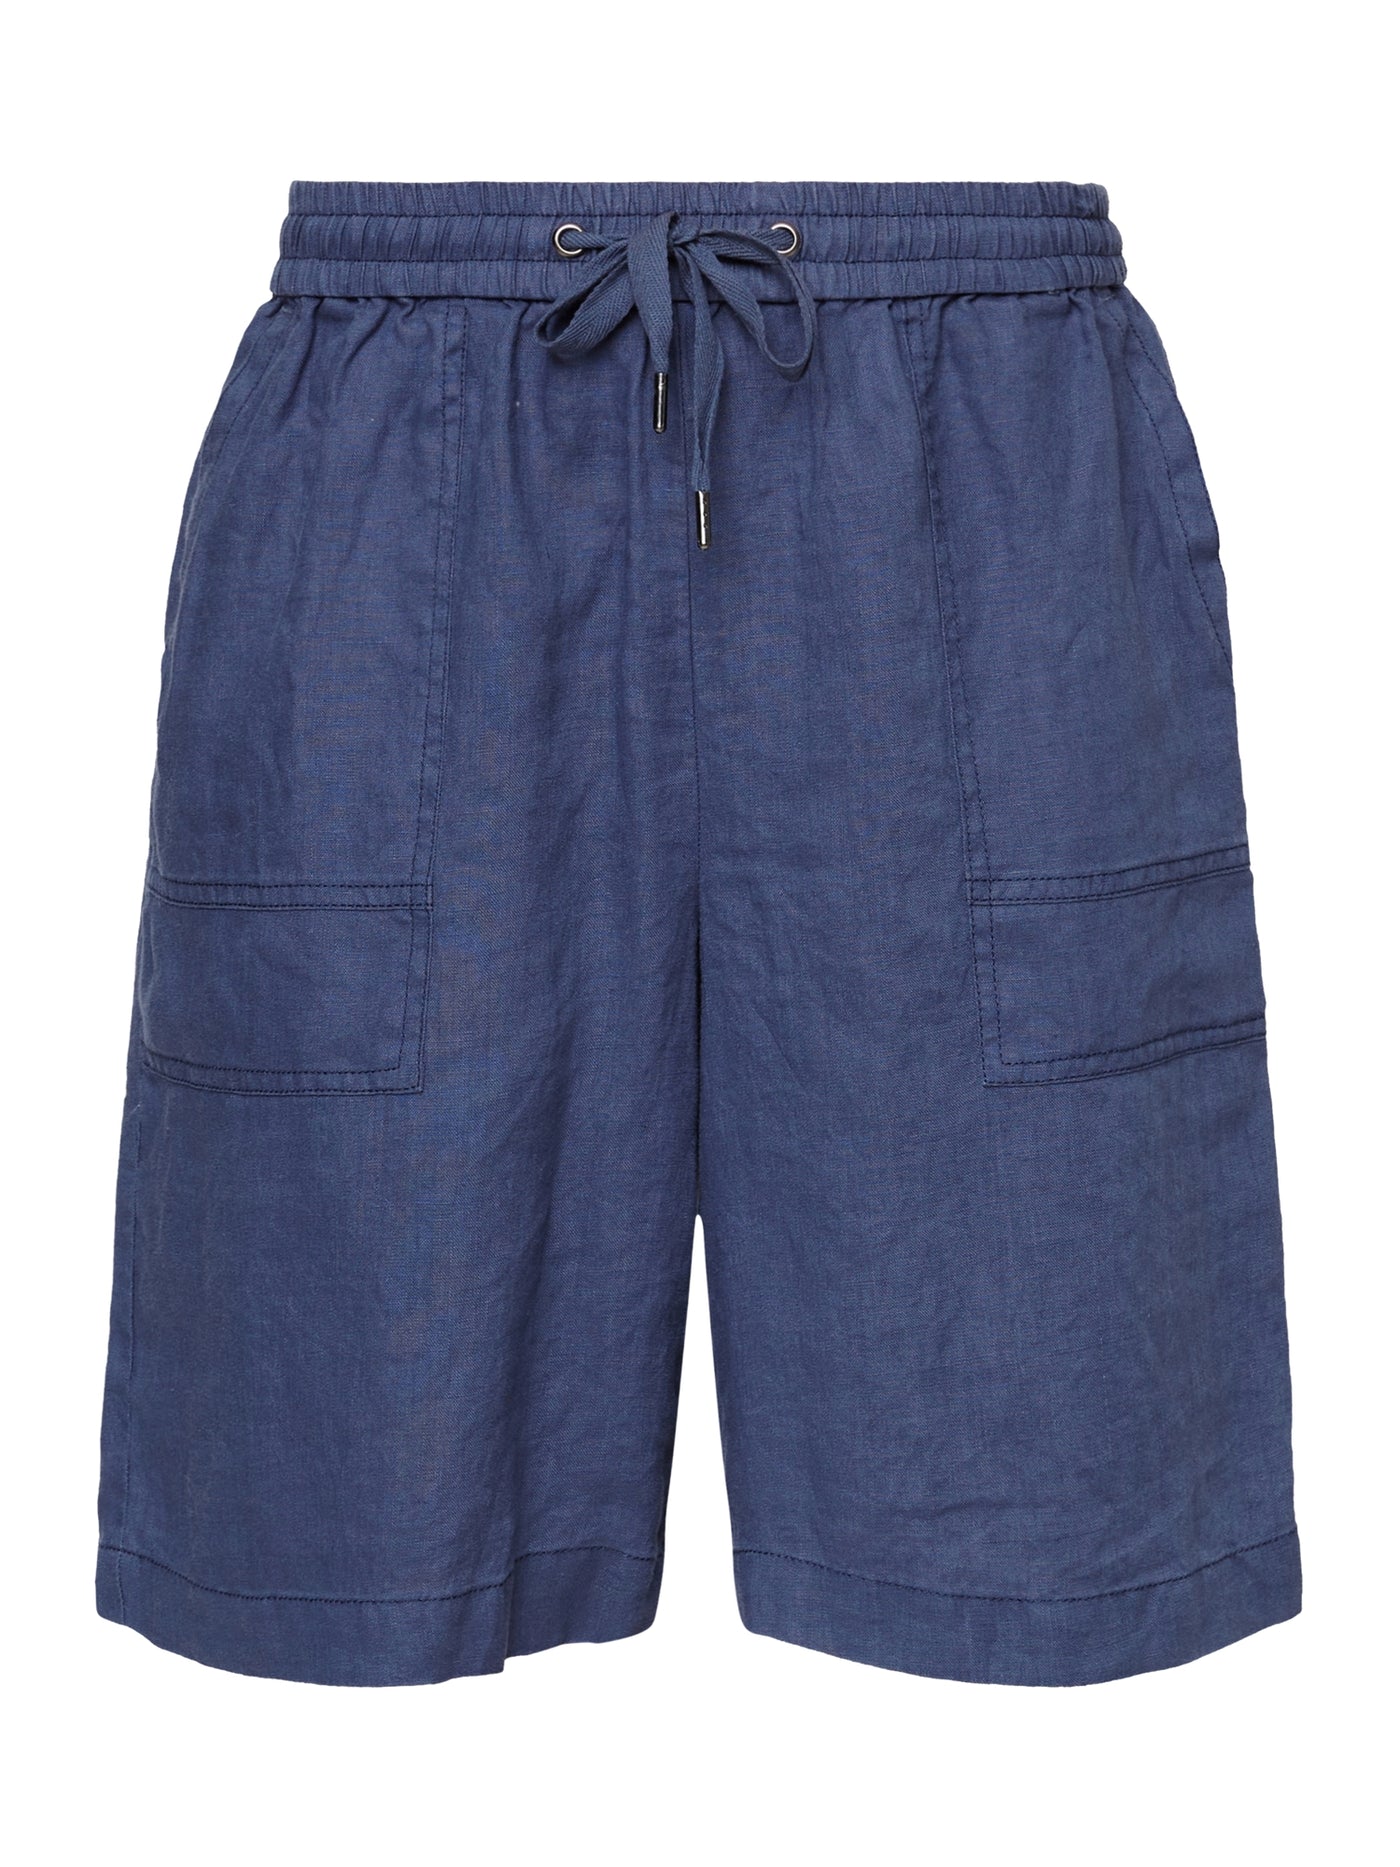 Shorts - Oceana Blue